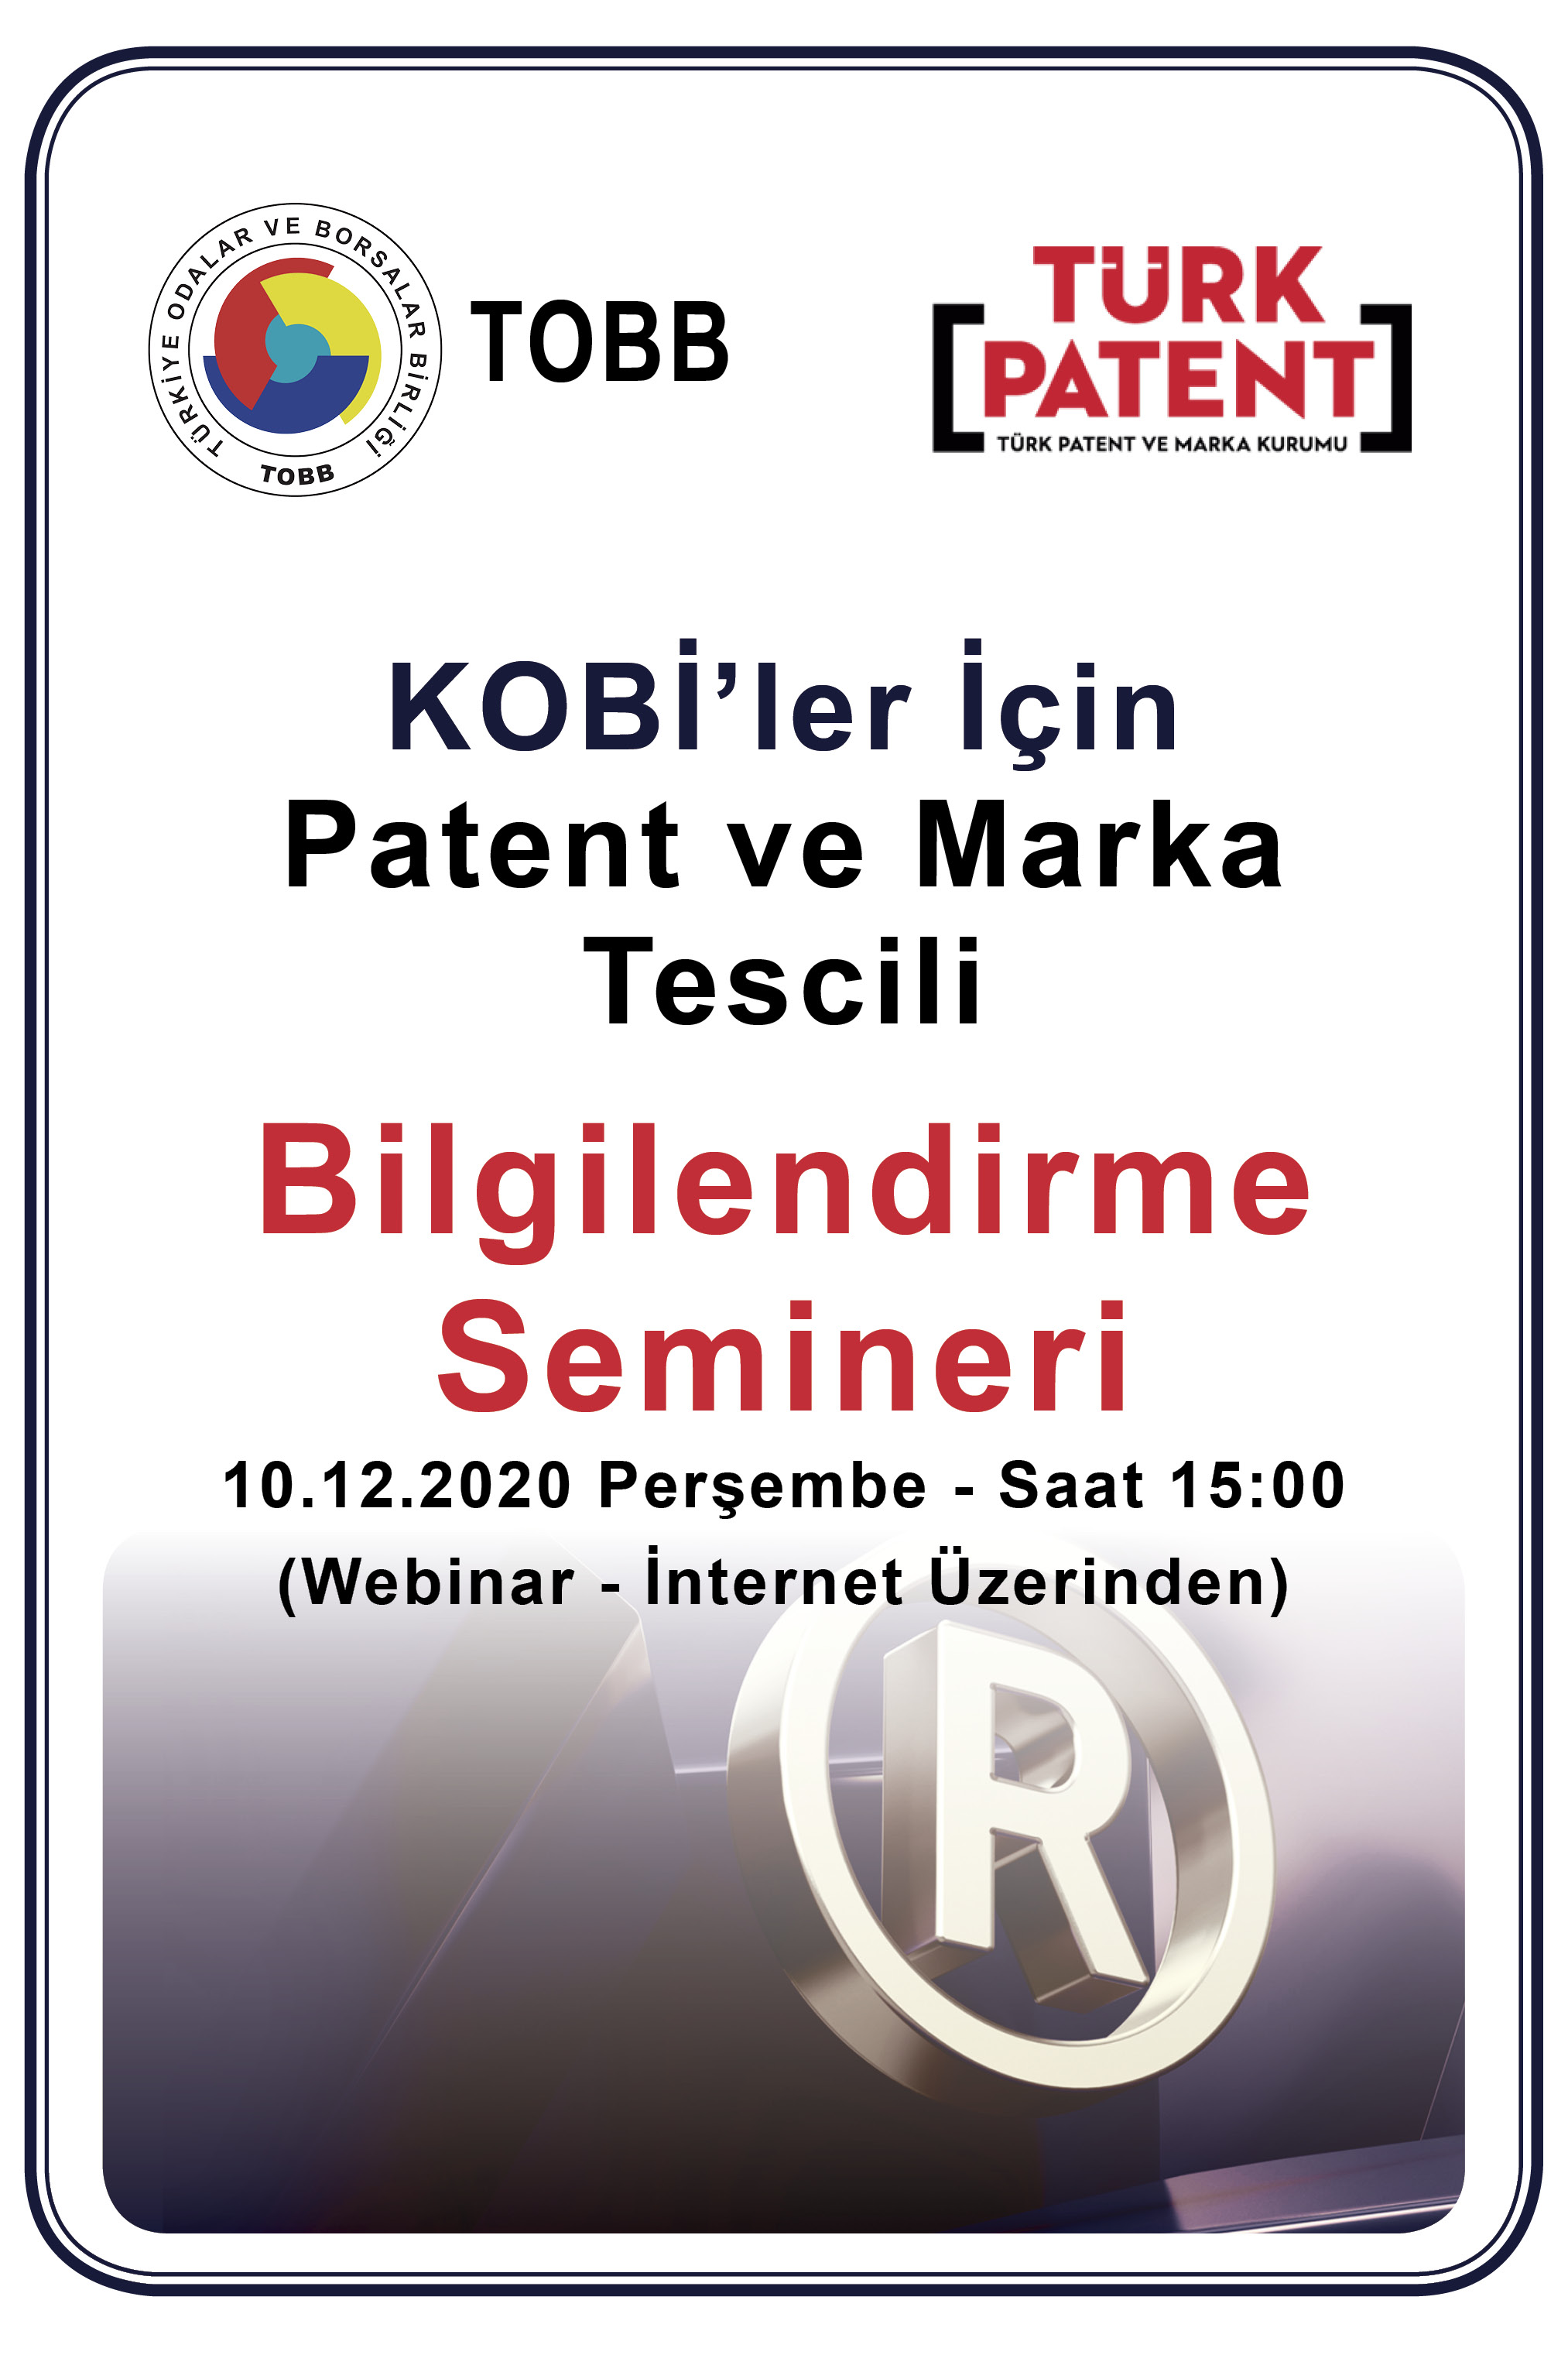 KOB'ler iin Patent ve Marka Tescili Bilgilendirme Semineri Hakknda